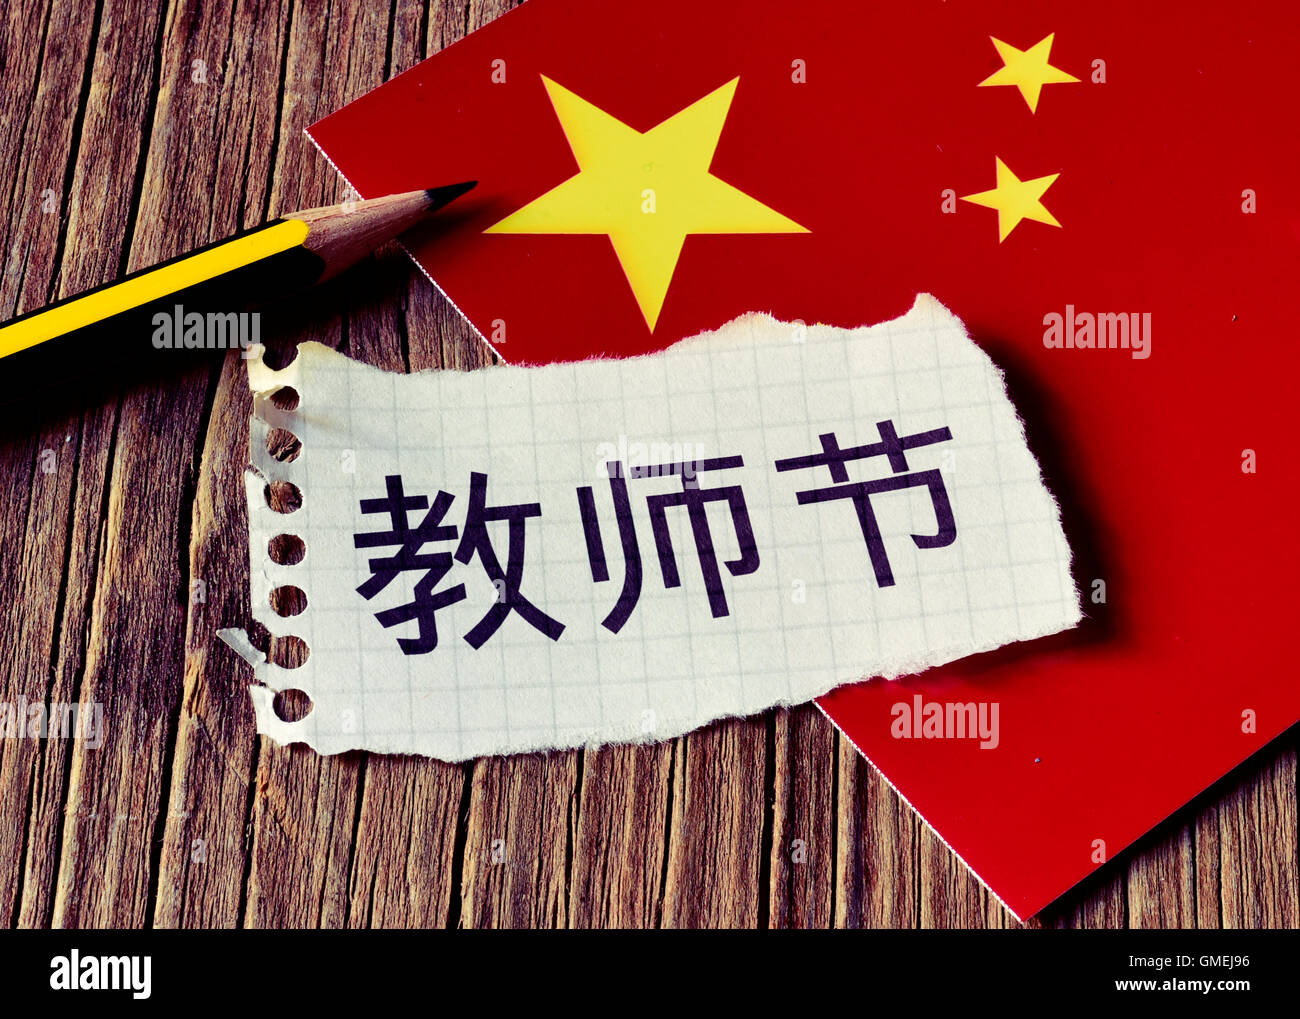 Primo piano di una pace della carta con il testo insegnanti giorno scritto in cinese, una matita e la bandiera della Cina, posto su un rustico wo Foto Stock